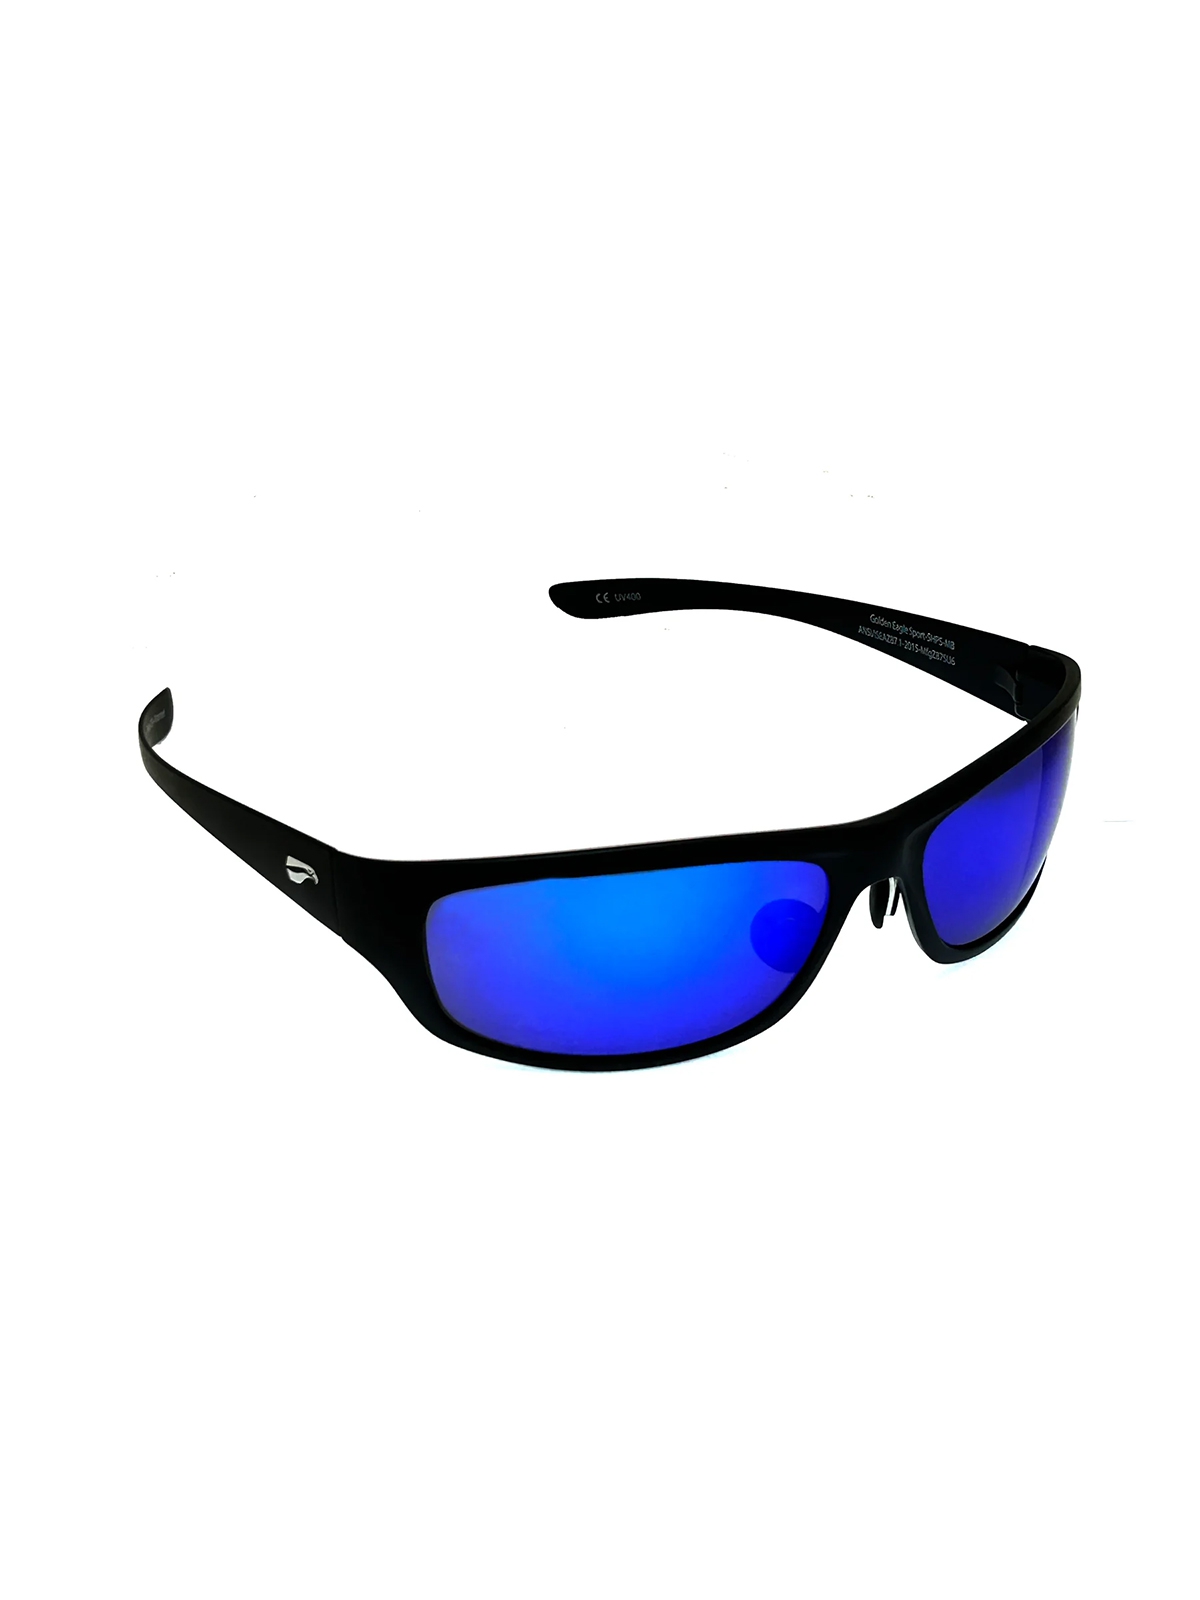 Flying Eyes Sonnenbrille Golden Eagle Sport - Rahmen matt-schwarz, Linsen saphirblau (verspiegelt)